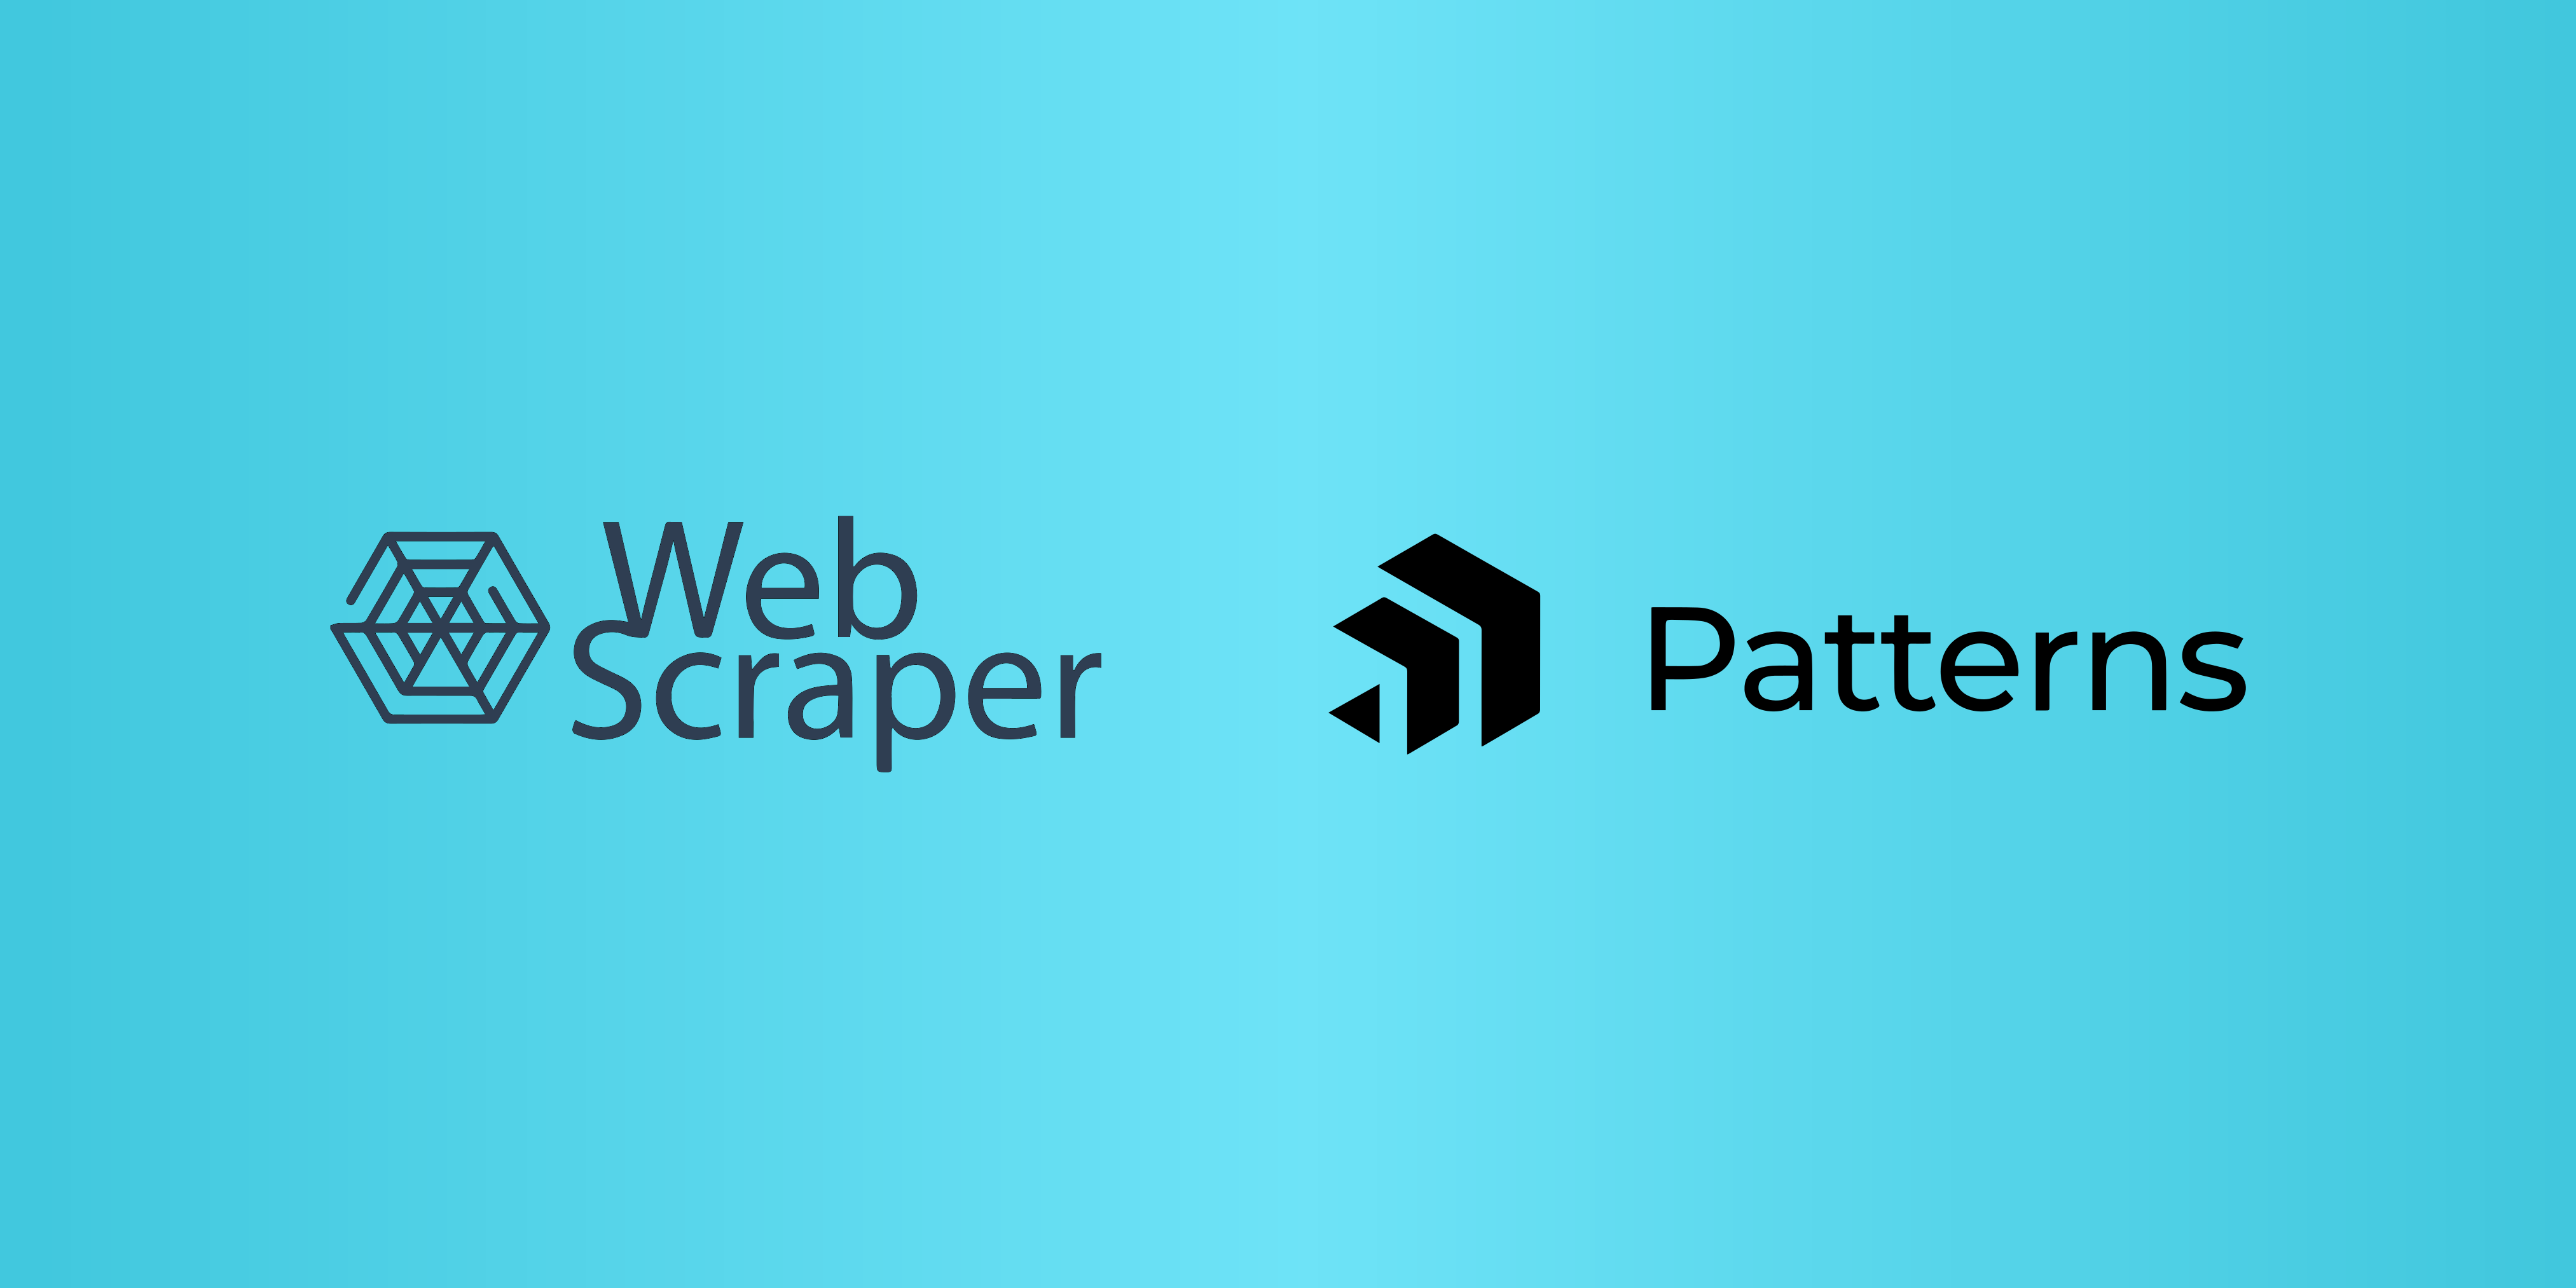 Web Scraper and Patterns